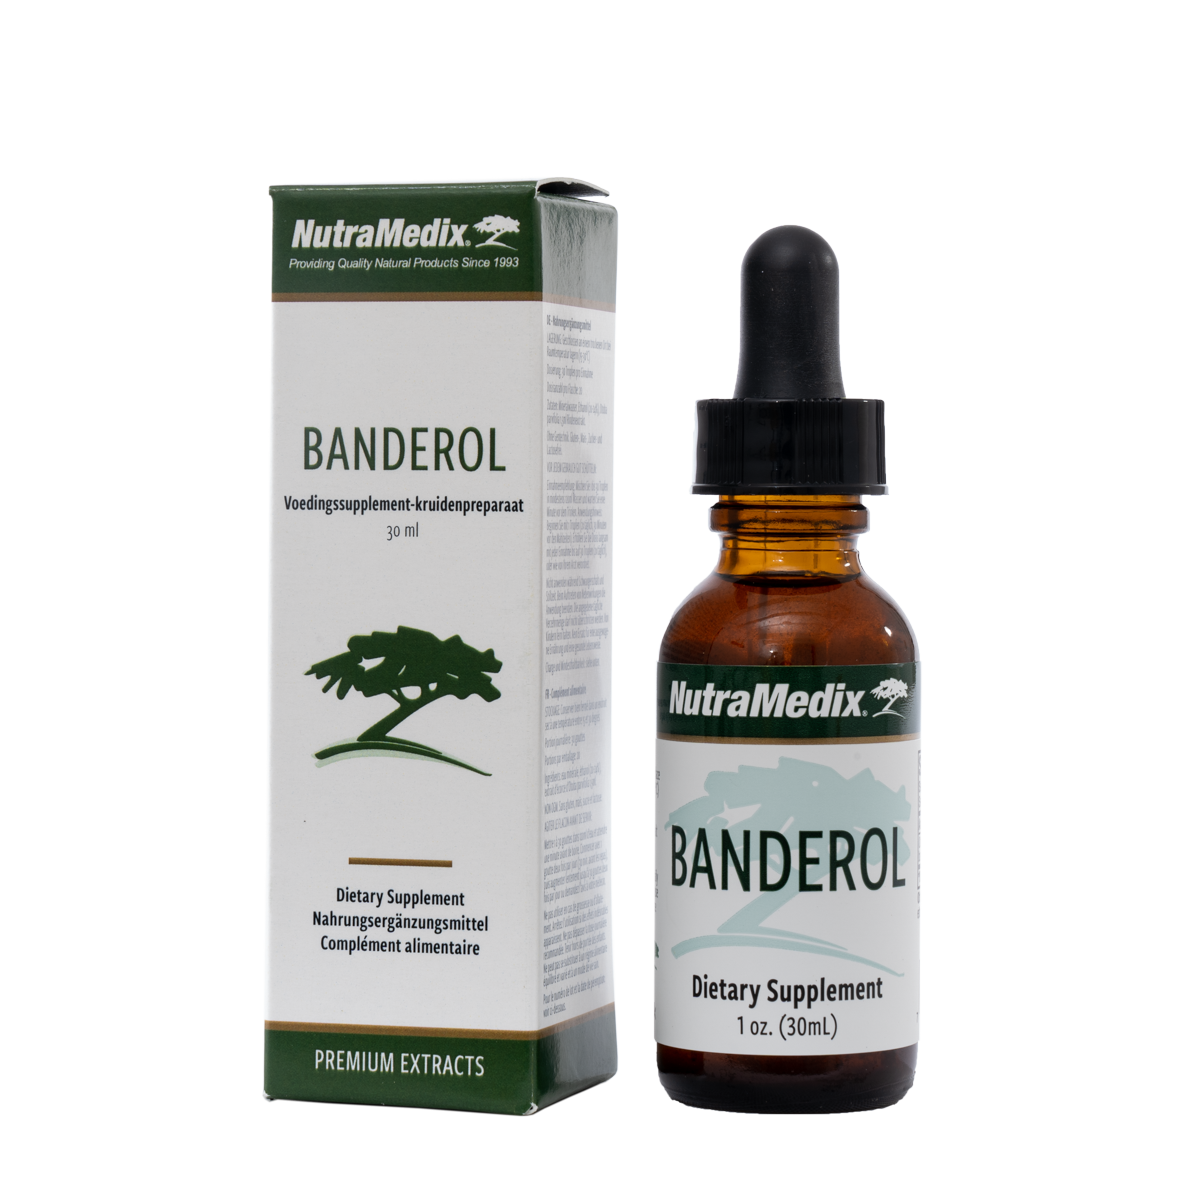 Banderol Microbial Defense - 30 ml